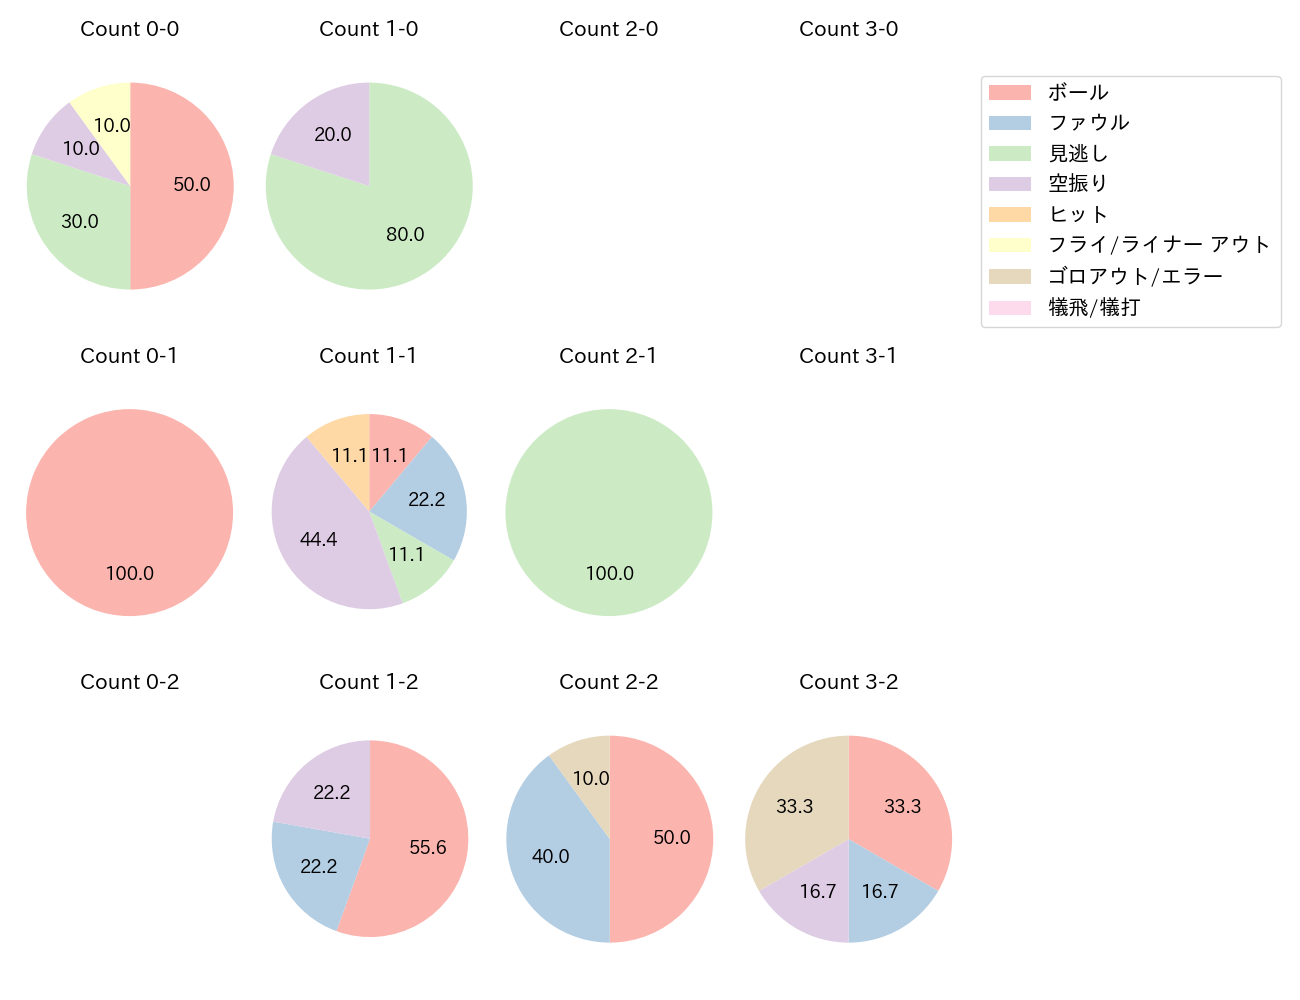 川島 慶三の球数分布(2021年7月)